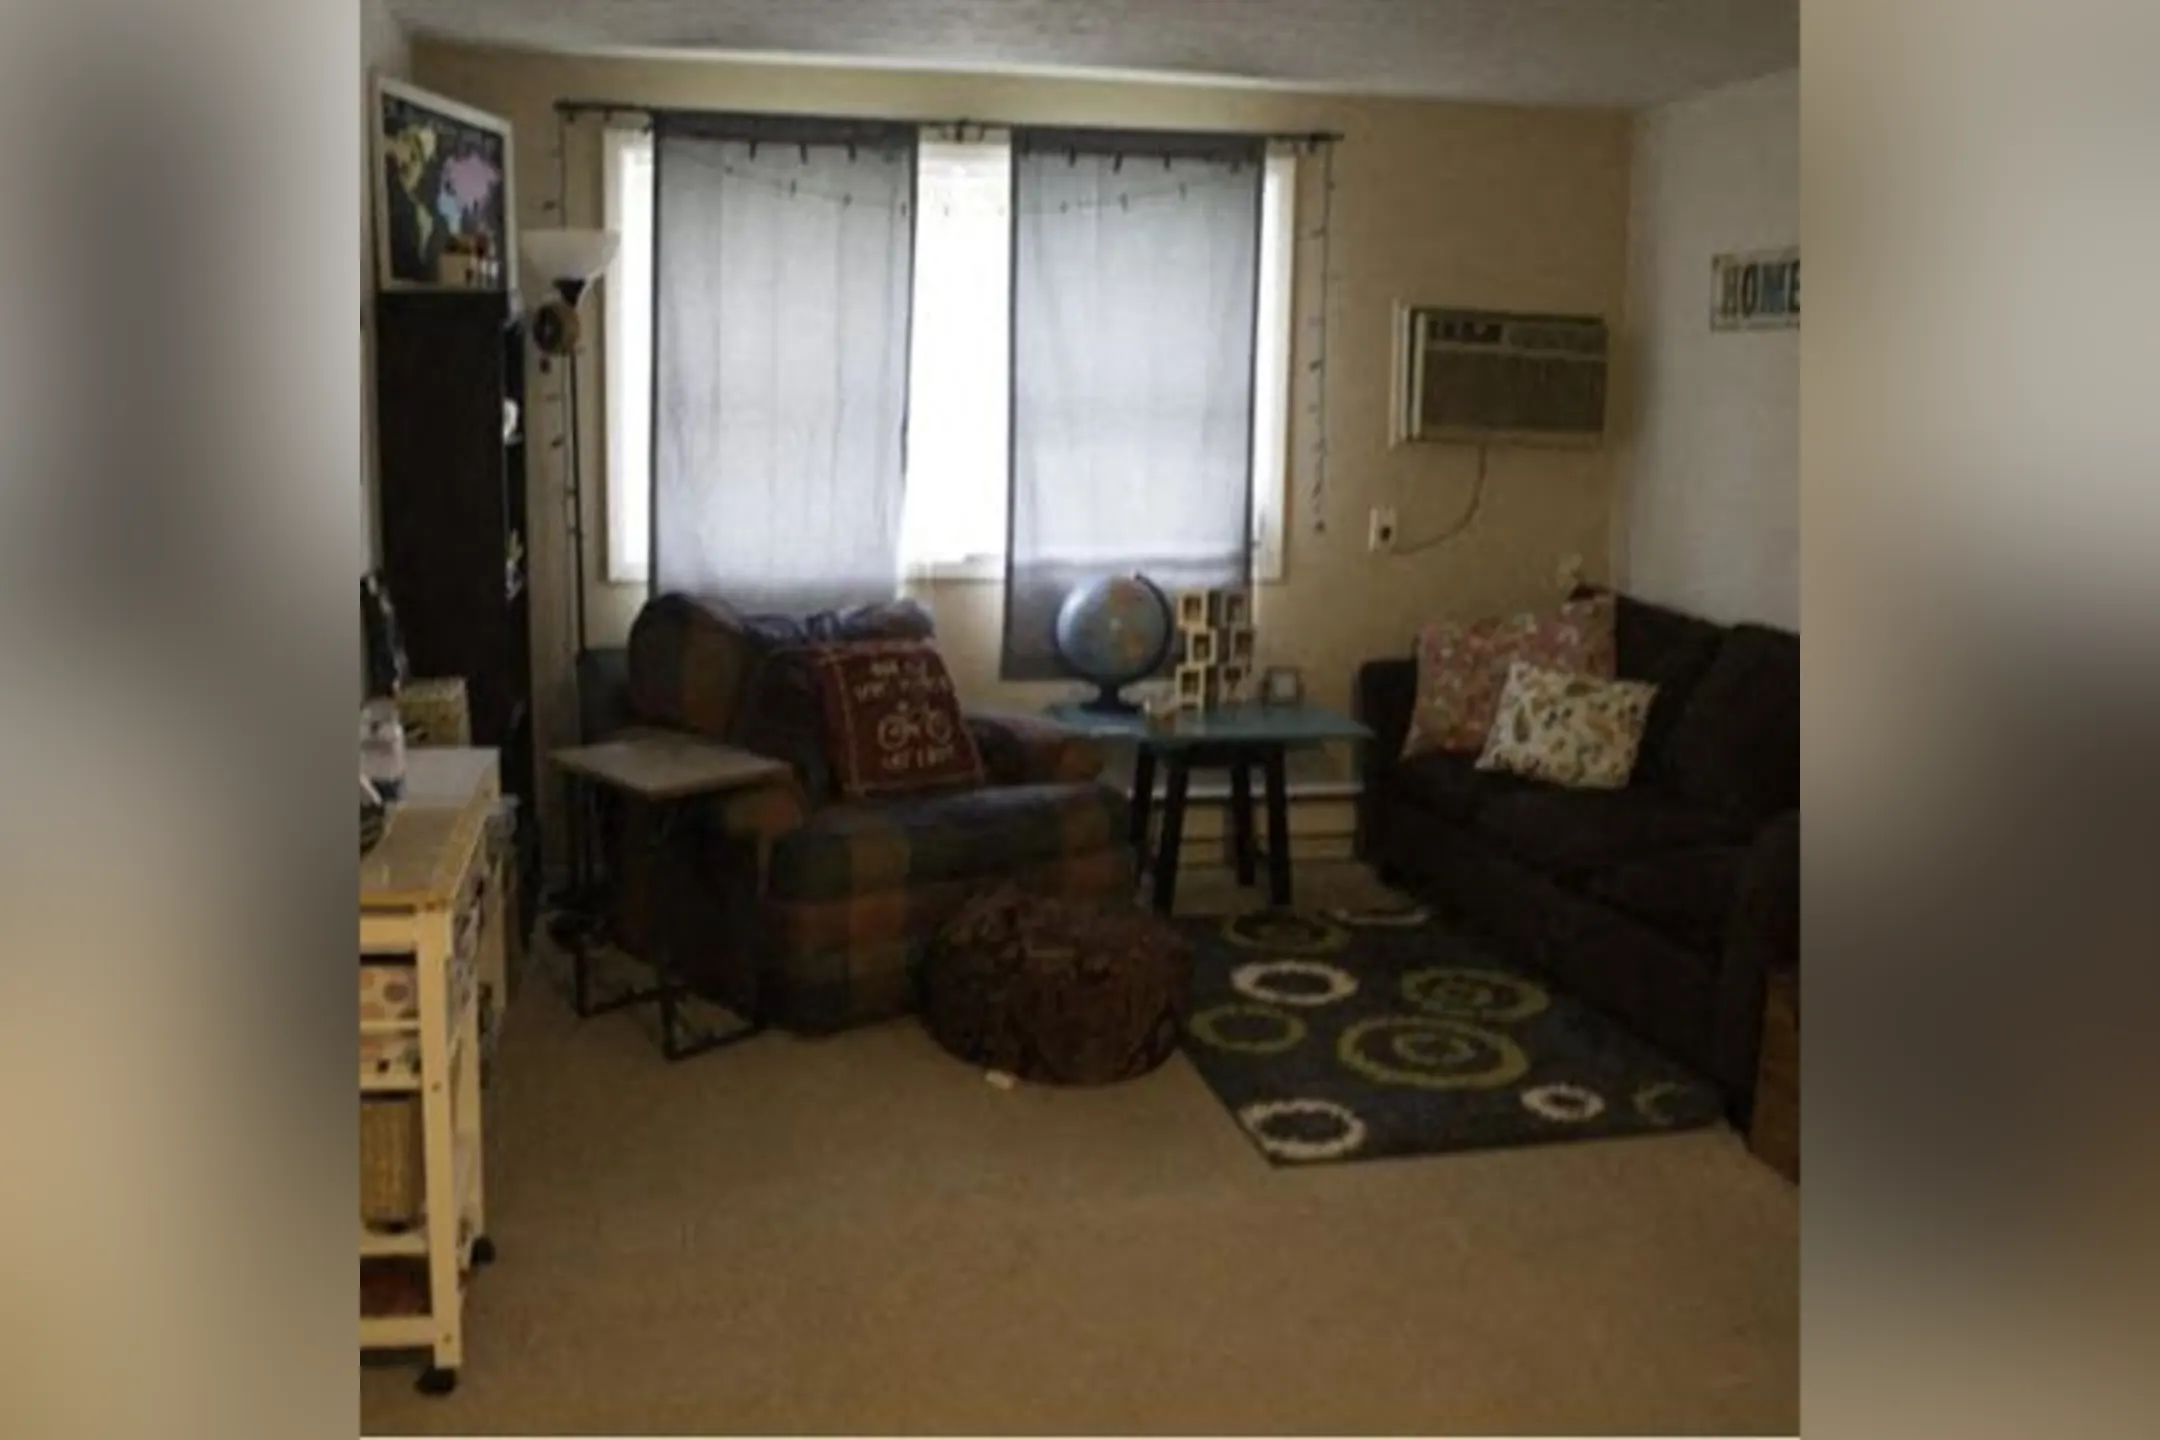 Woodgate Village Condominium Living Room Size